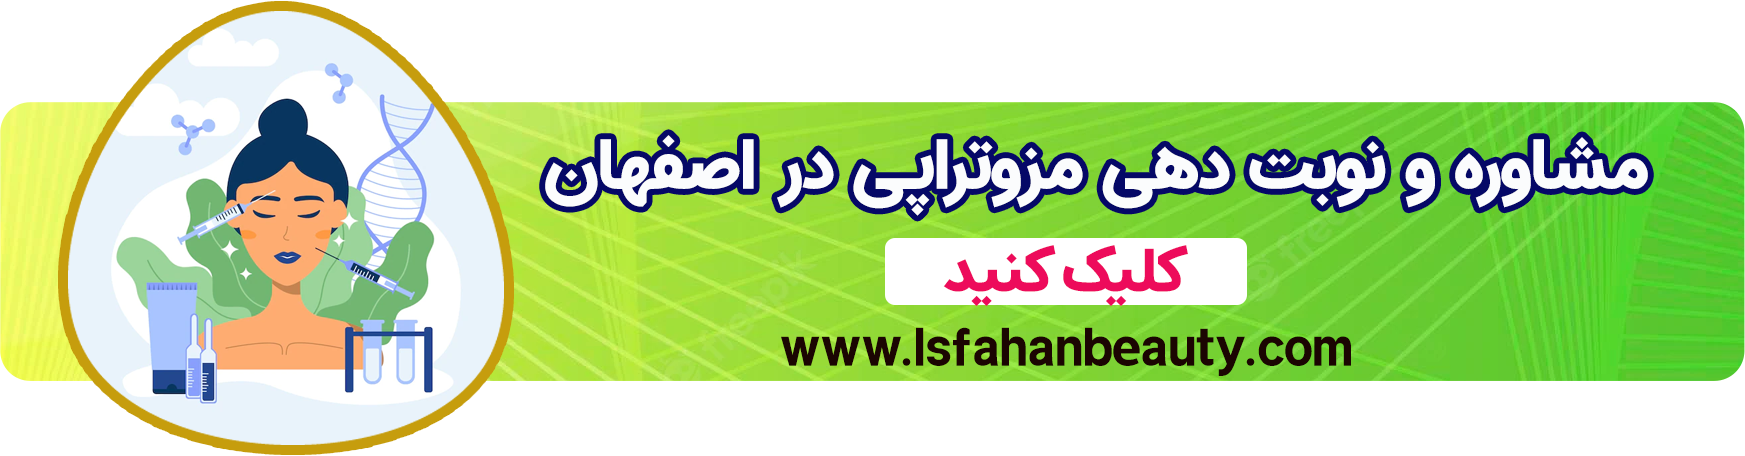 مزوتراپی اصفهان| اصفهان بیوتی